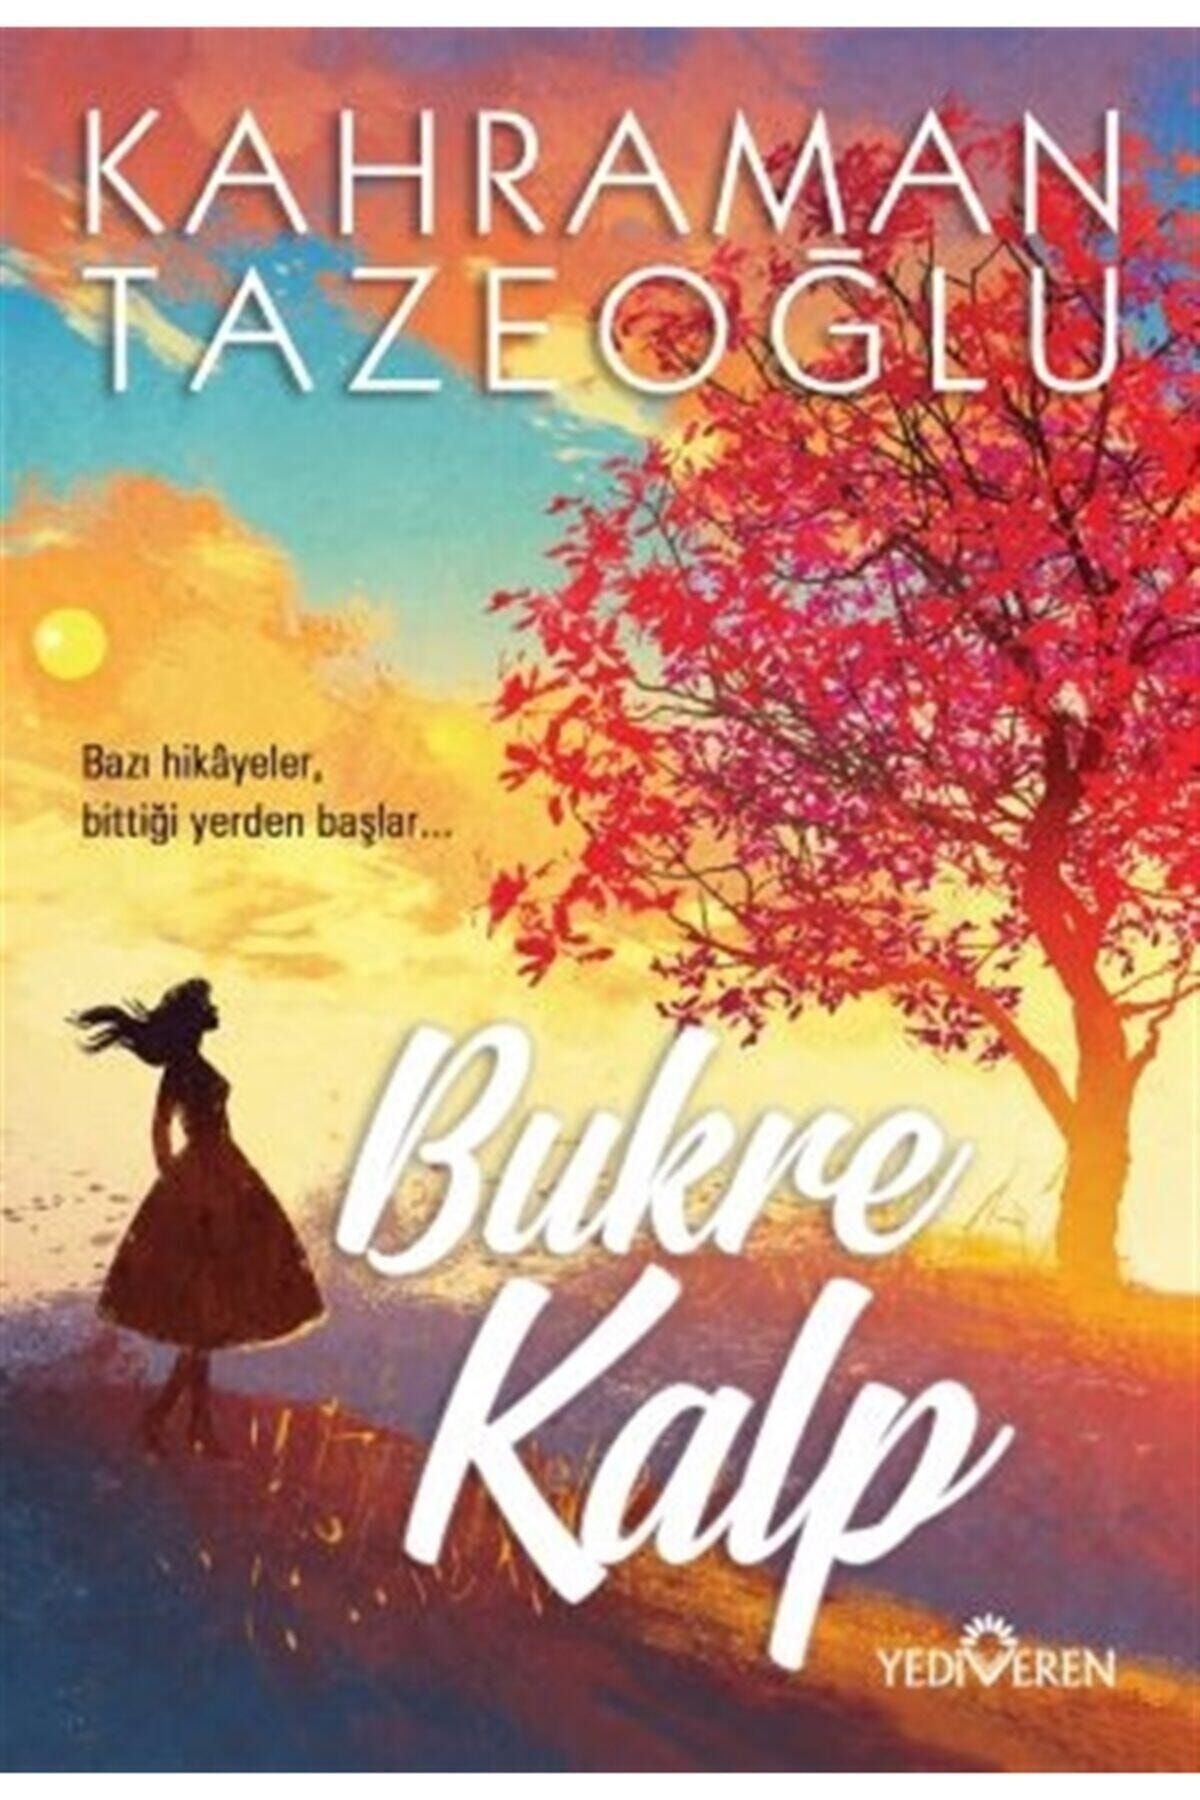 Yediveren Yayınları Bukre Kalp - Kahraman Tazeoğlu 9786052691908